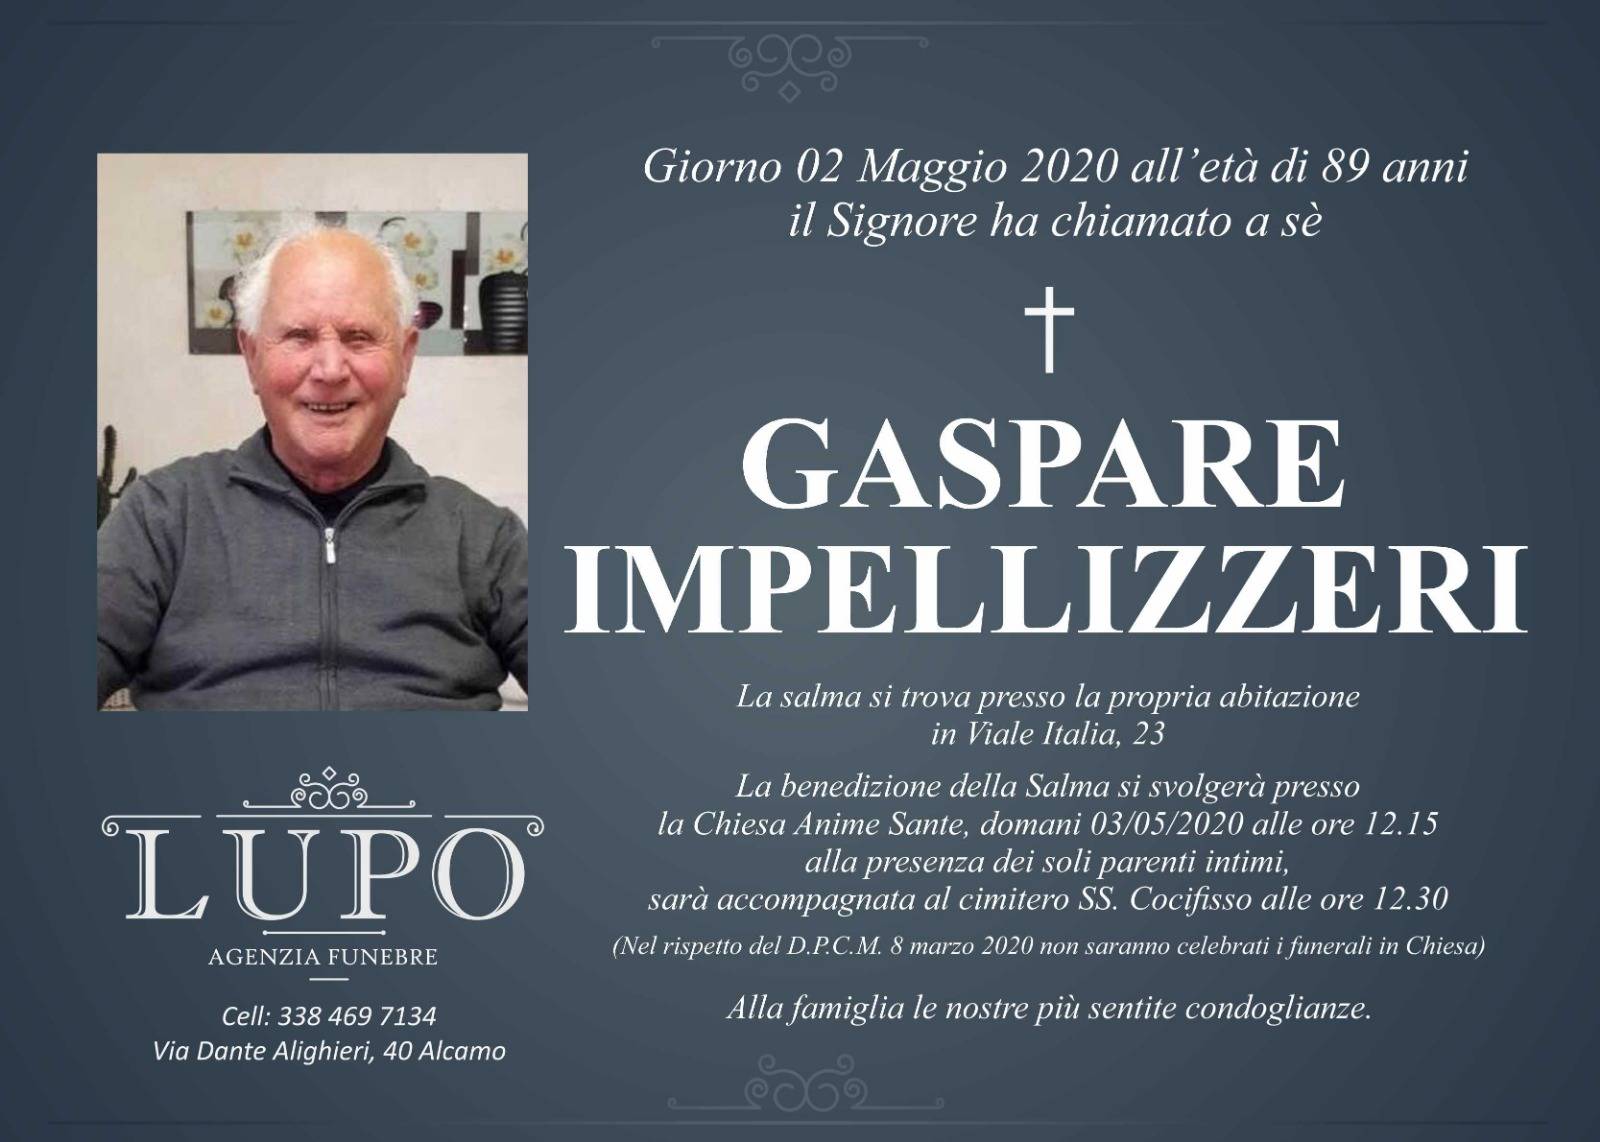 Gaspare Impellizzeri